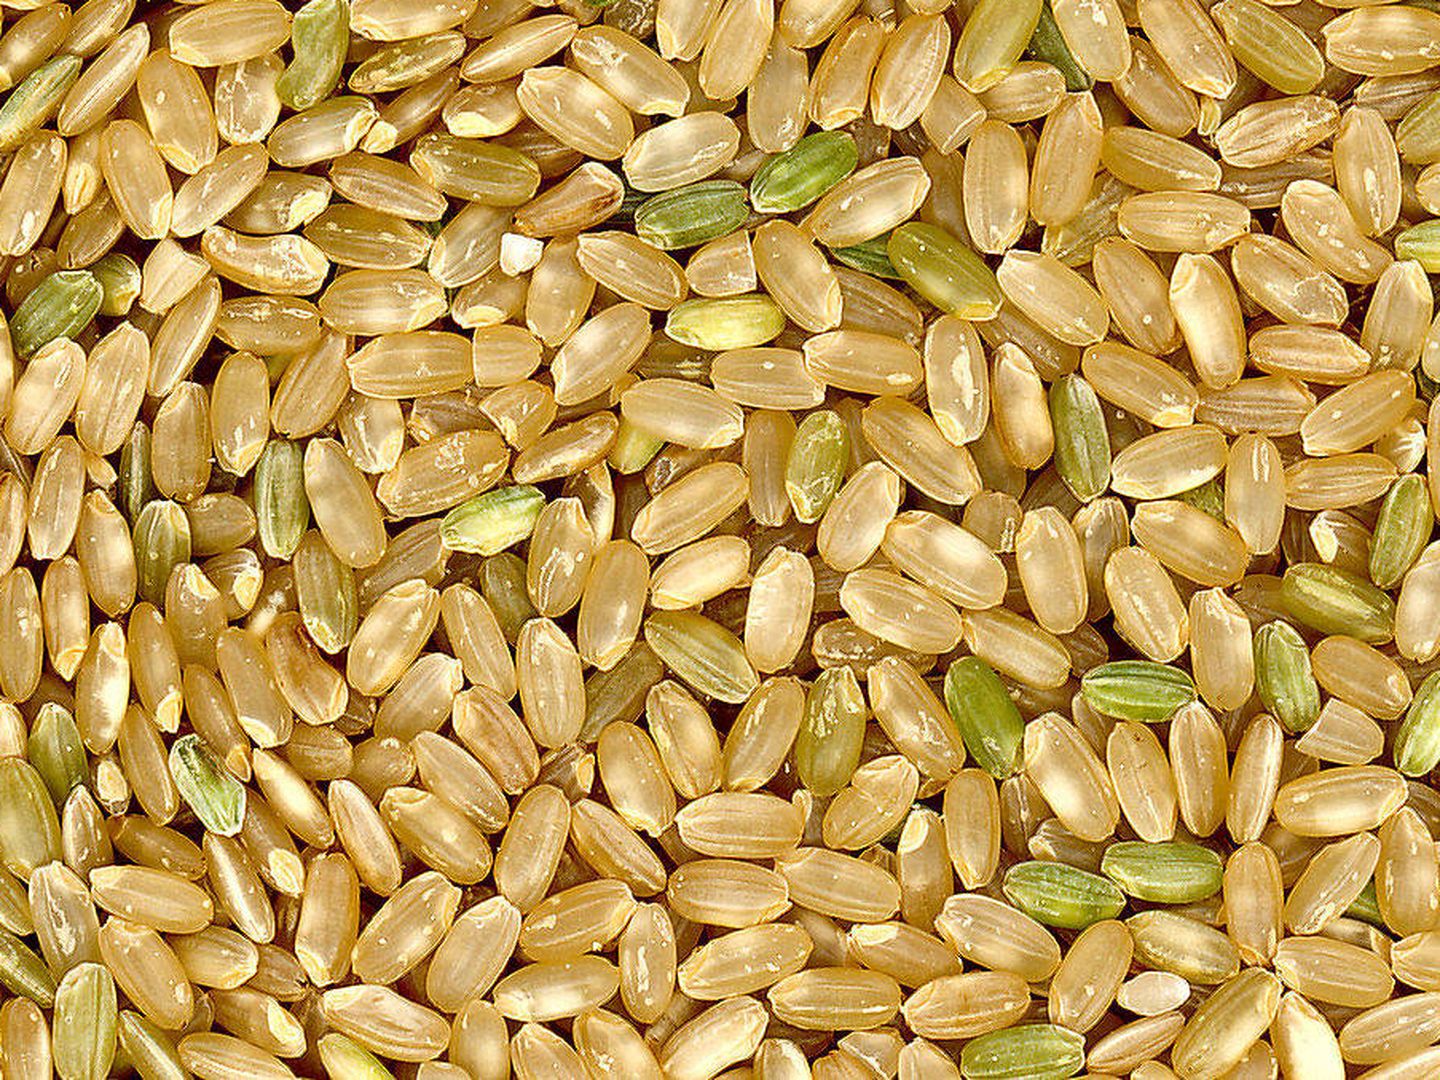  La cascarilla de arroz tiene sílice, un material refractario. (Imagen: Wikipedia)